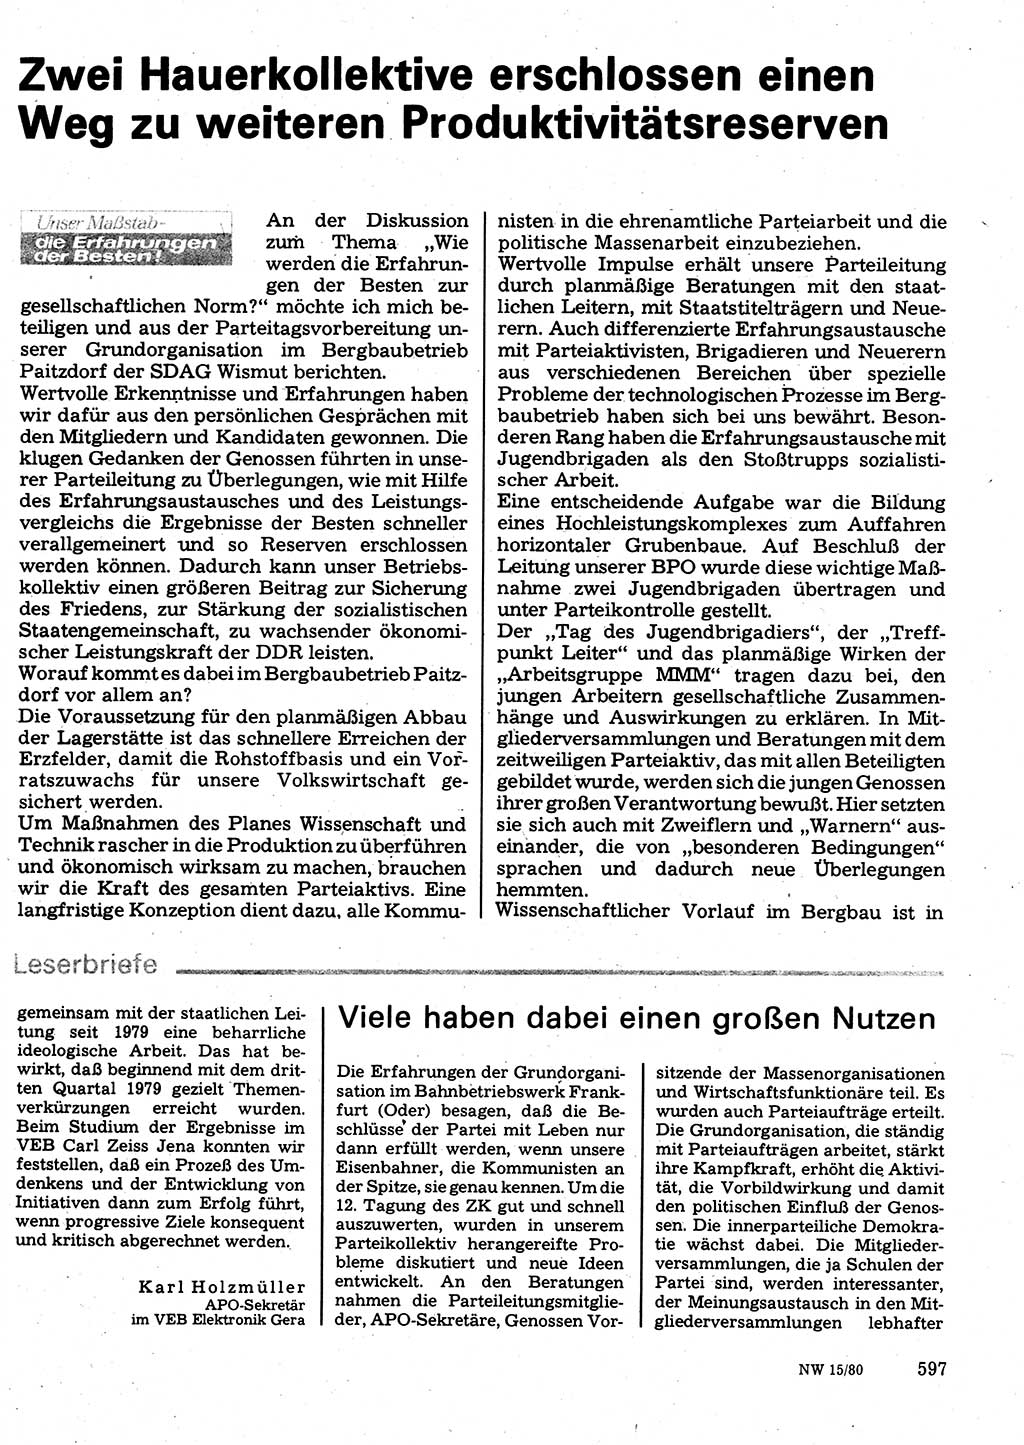 Neuer Weg (NW), Organ des Zentralkomitees (ZK) der SED (Sozialistische Einheitspartei Deutschlands) für Fragen des Parteilebens, 35. Jahrgang [Deutsche Demokratische Republik (DDR)] 1980, Seite 597 (NW ZK SED DDR 1980, S. 597)